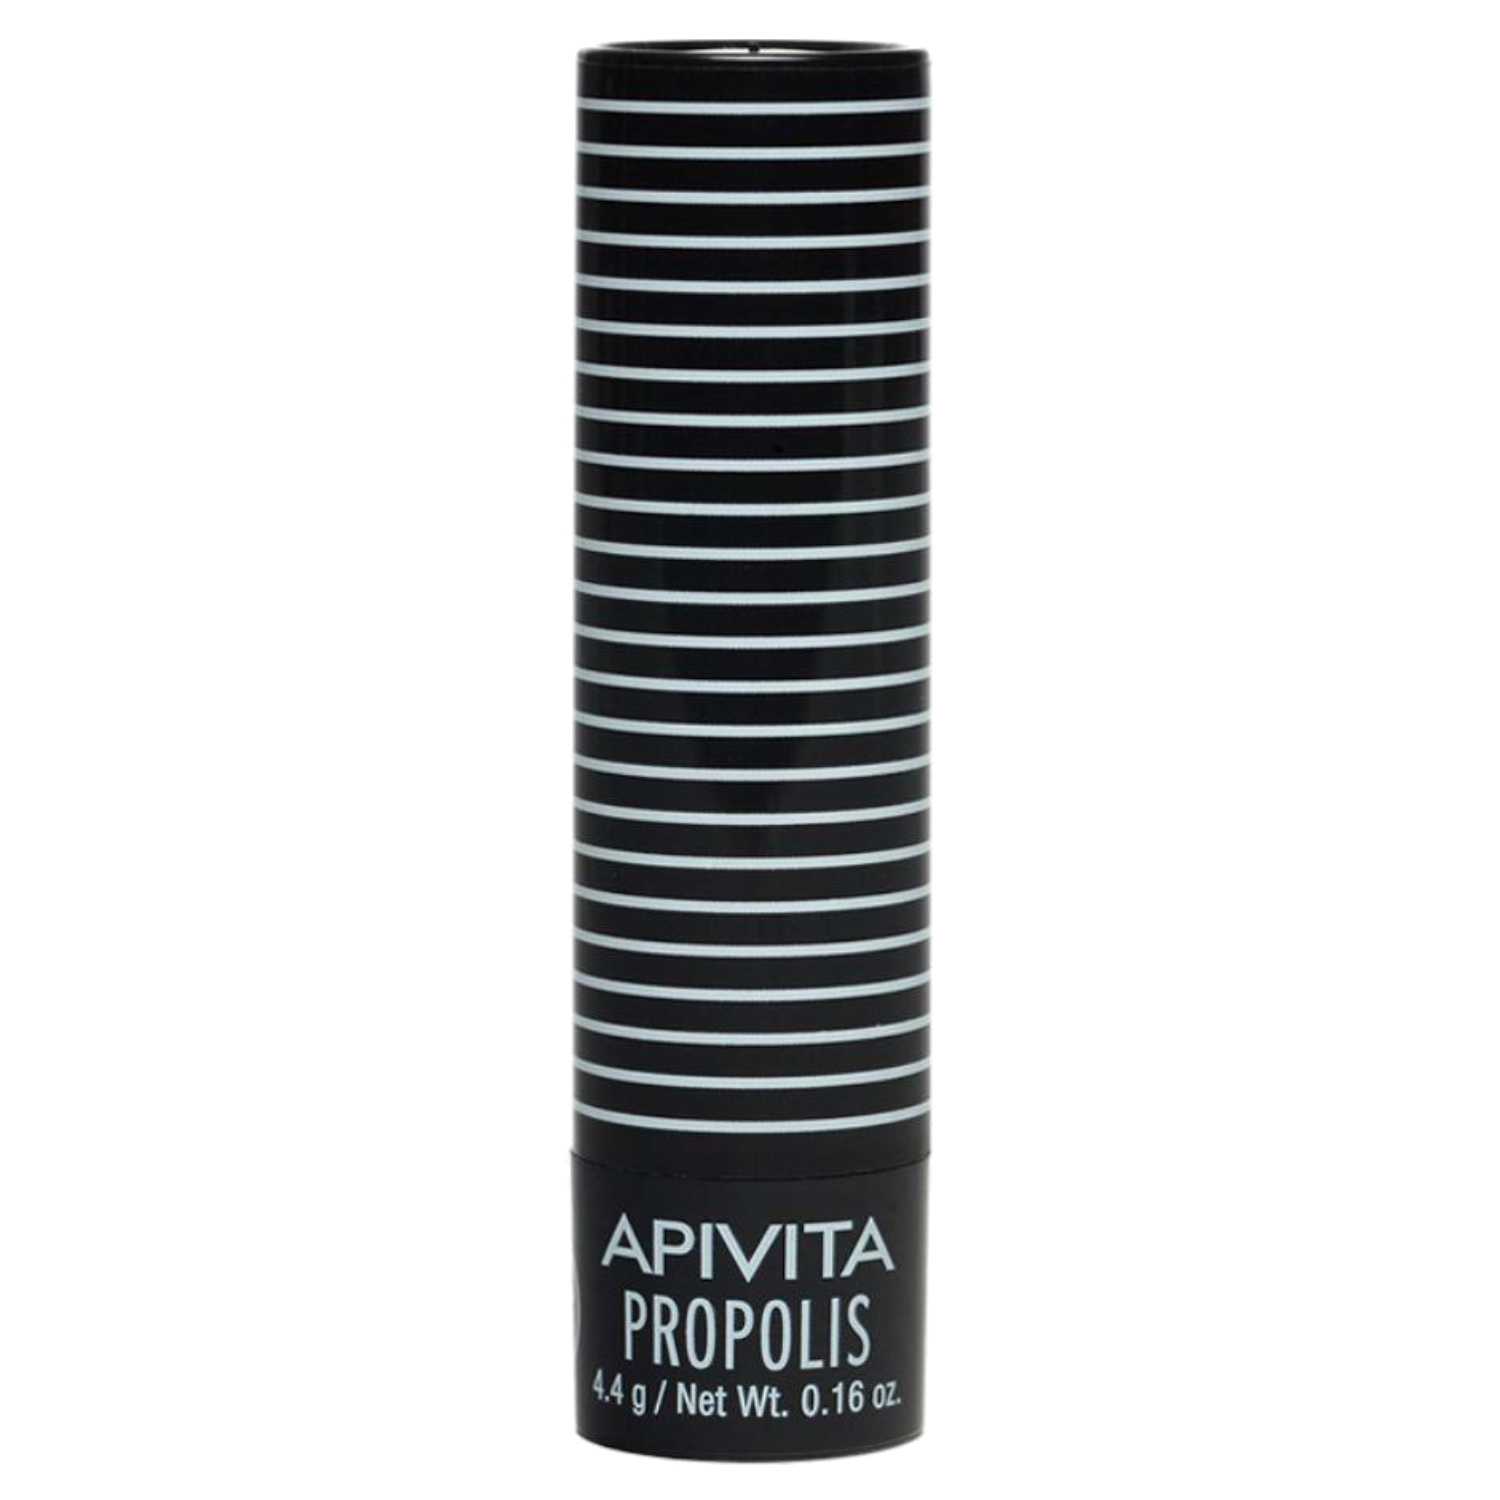 أبيفيتا APIVITA منتج العناية بالشفاه بالعكبر الاسود 4.4 غم